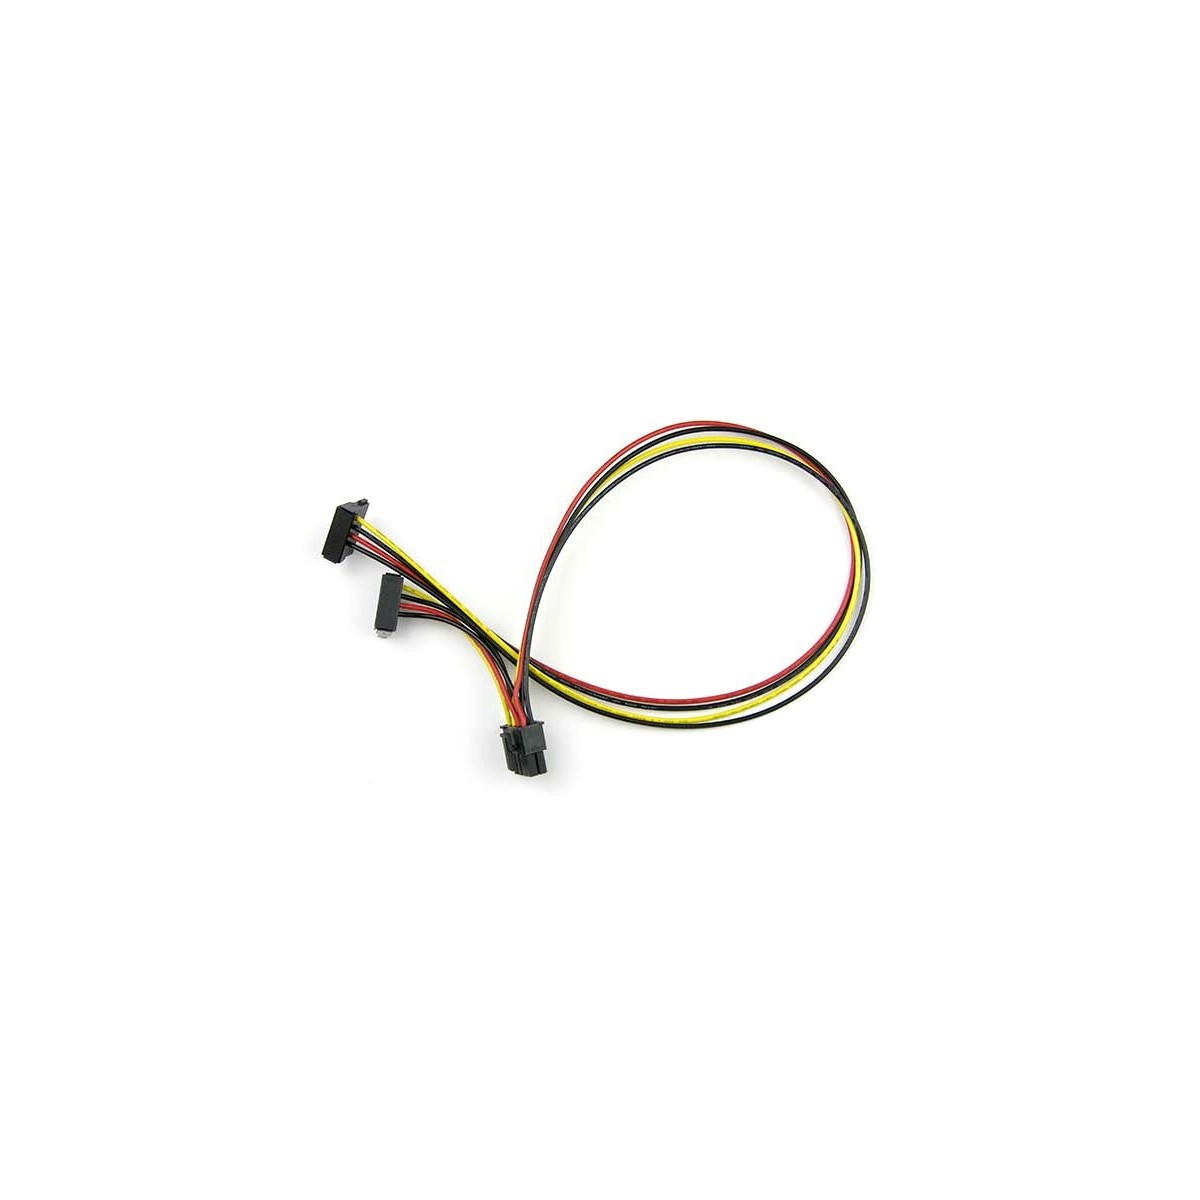 Supermicro CBL-0487L-01 - 0.58 m - PCI-E (8-pin) - 2 x SATA 15-pin - Straight - Angled - Black,Red,Yellow